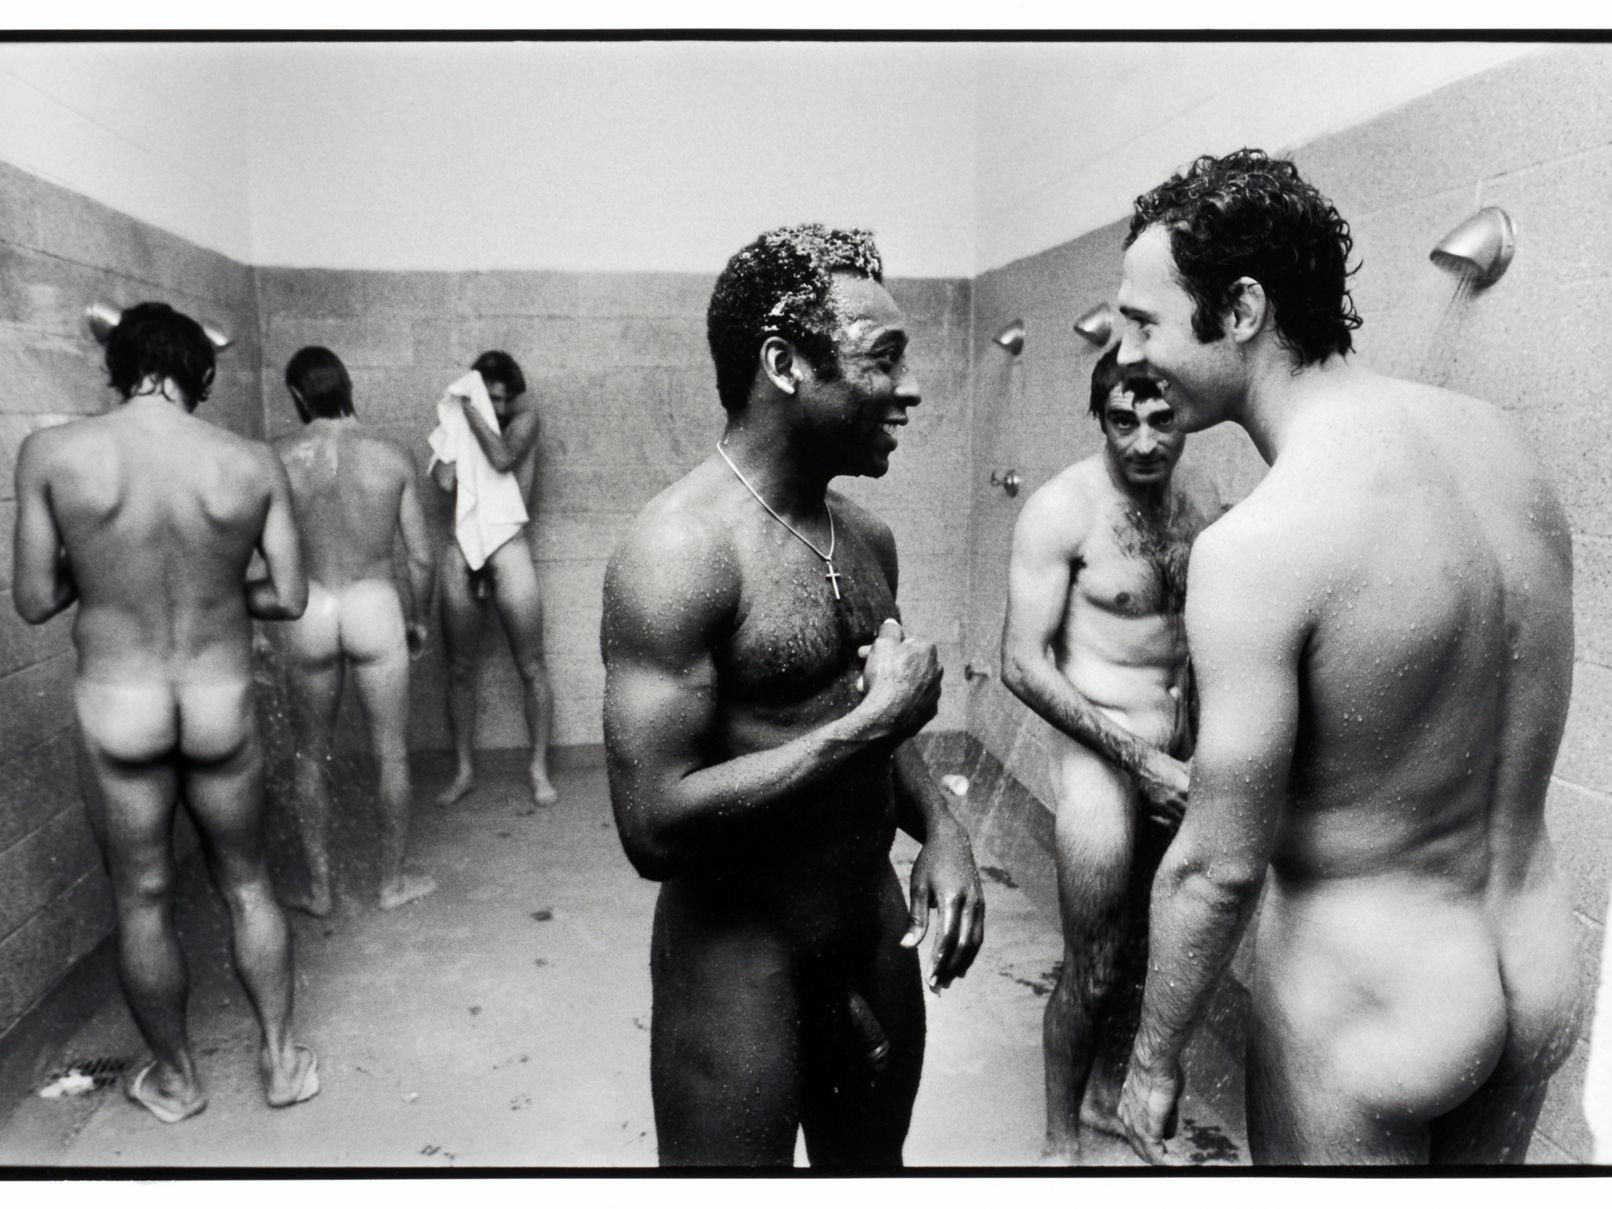 Pele und Franz Beckenbauer unter der Dusche, Fort Lauderdale, 1977. (Teutloff Photo + Video Collection, Bielefeld)